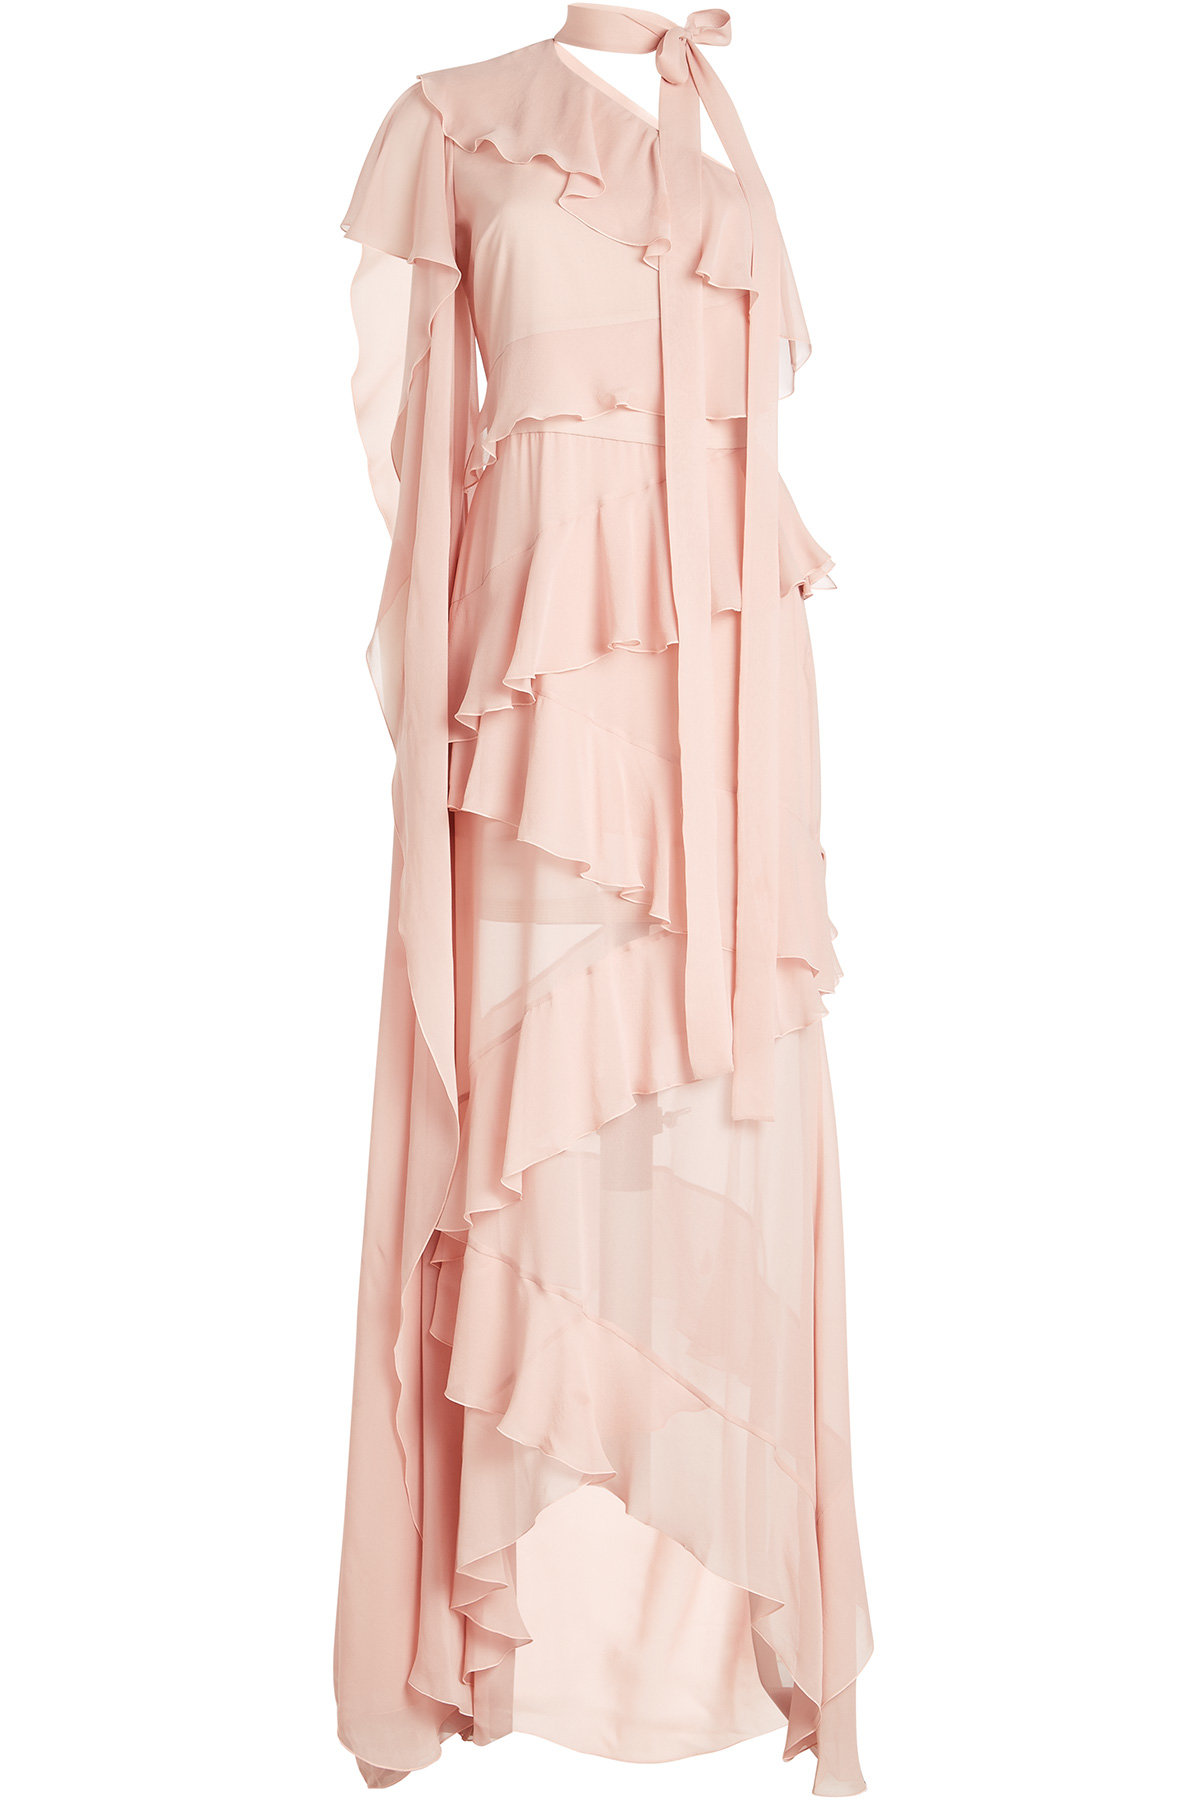 Elie Saab - Floor Length Silk Gown with One Sleeve